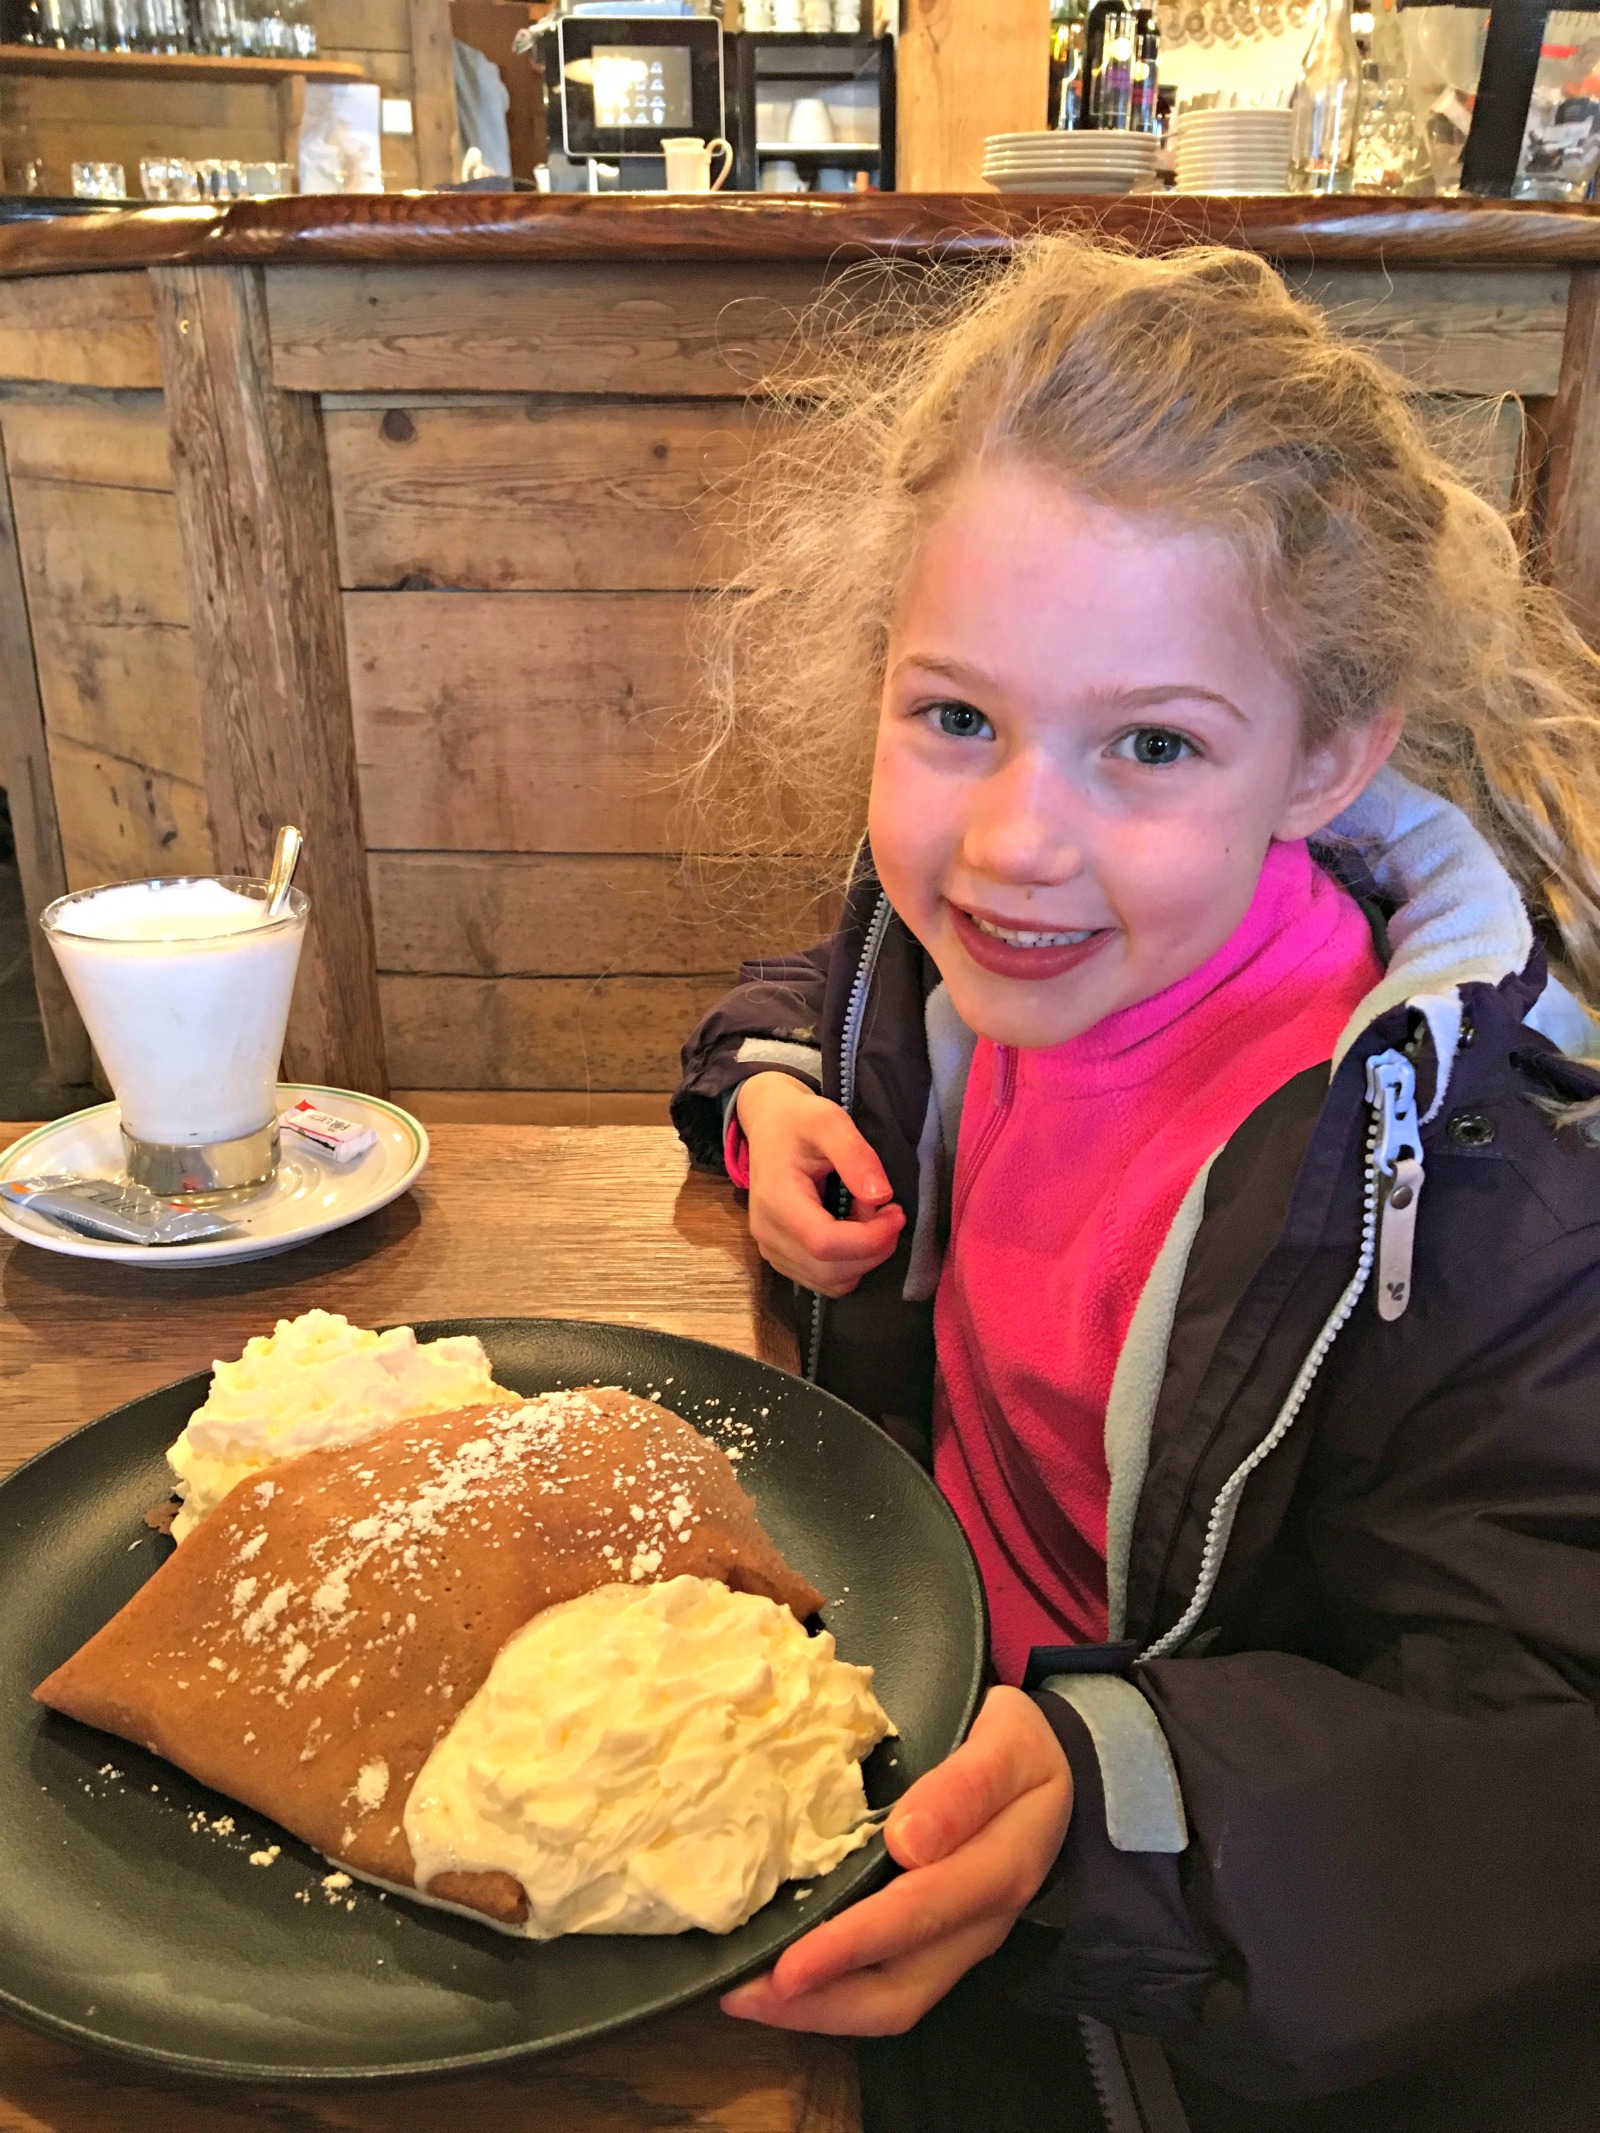 Skiing with kids: plan pancake stops